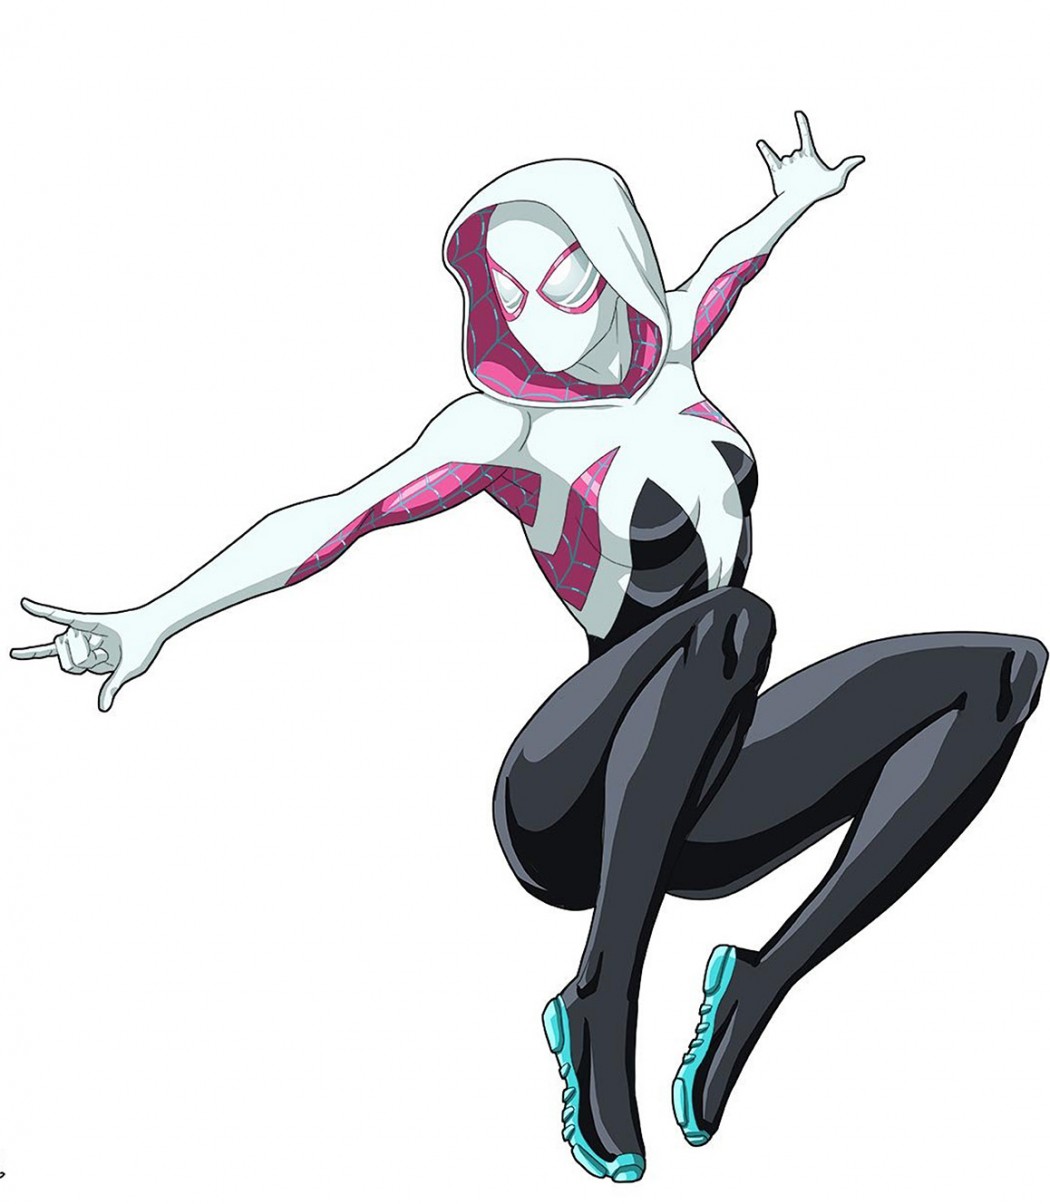 Ảnh Cosplay Spider Gwen Stacy tơ của nữ Cosplayer đang bắn tơ chiến đấu